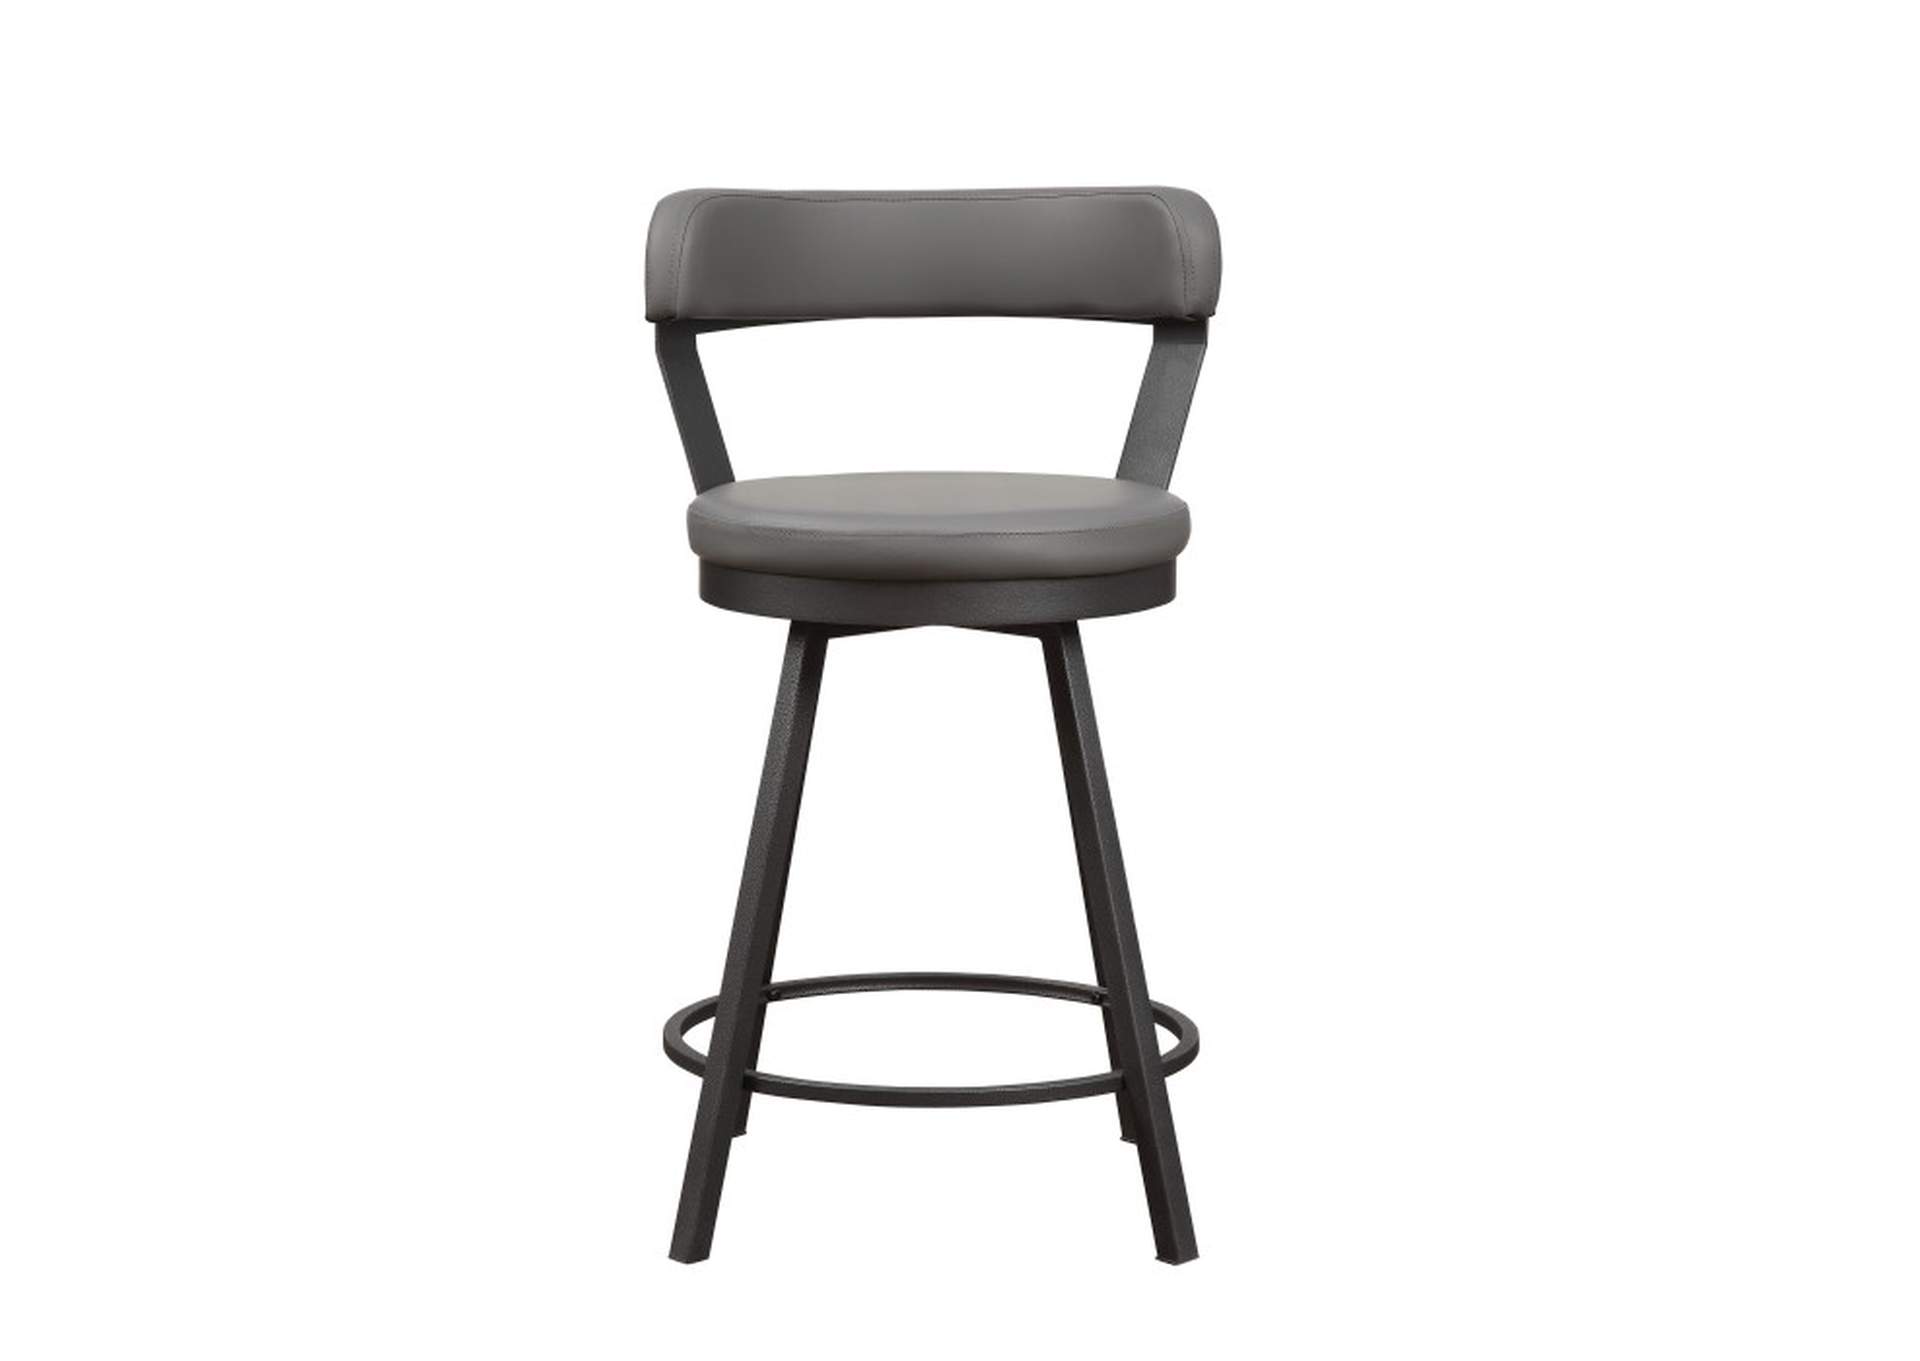 Appert Swivel Counter Height Chair, Gray,Homelegance